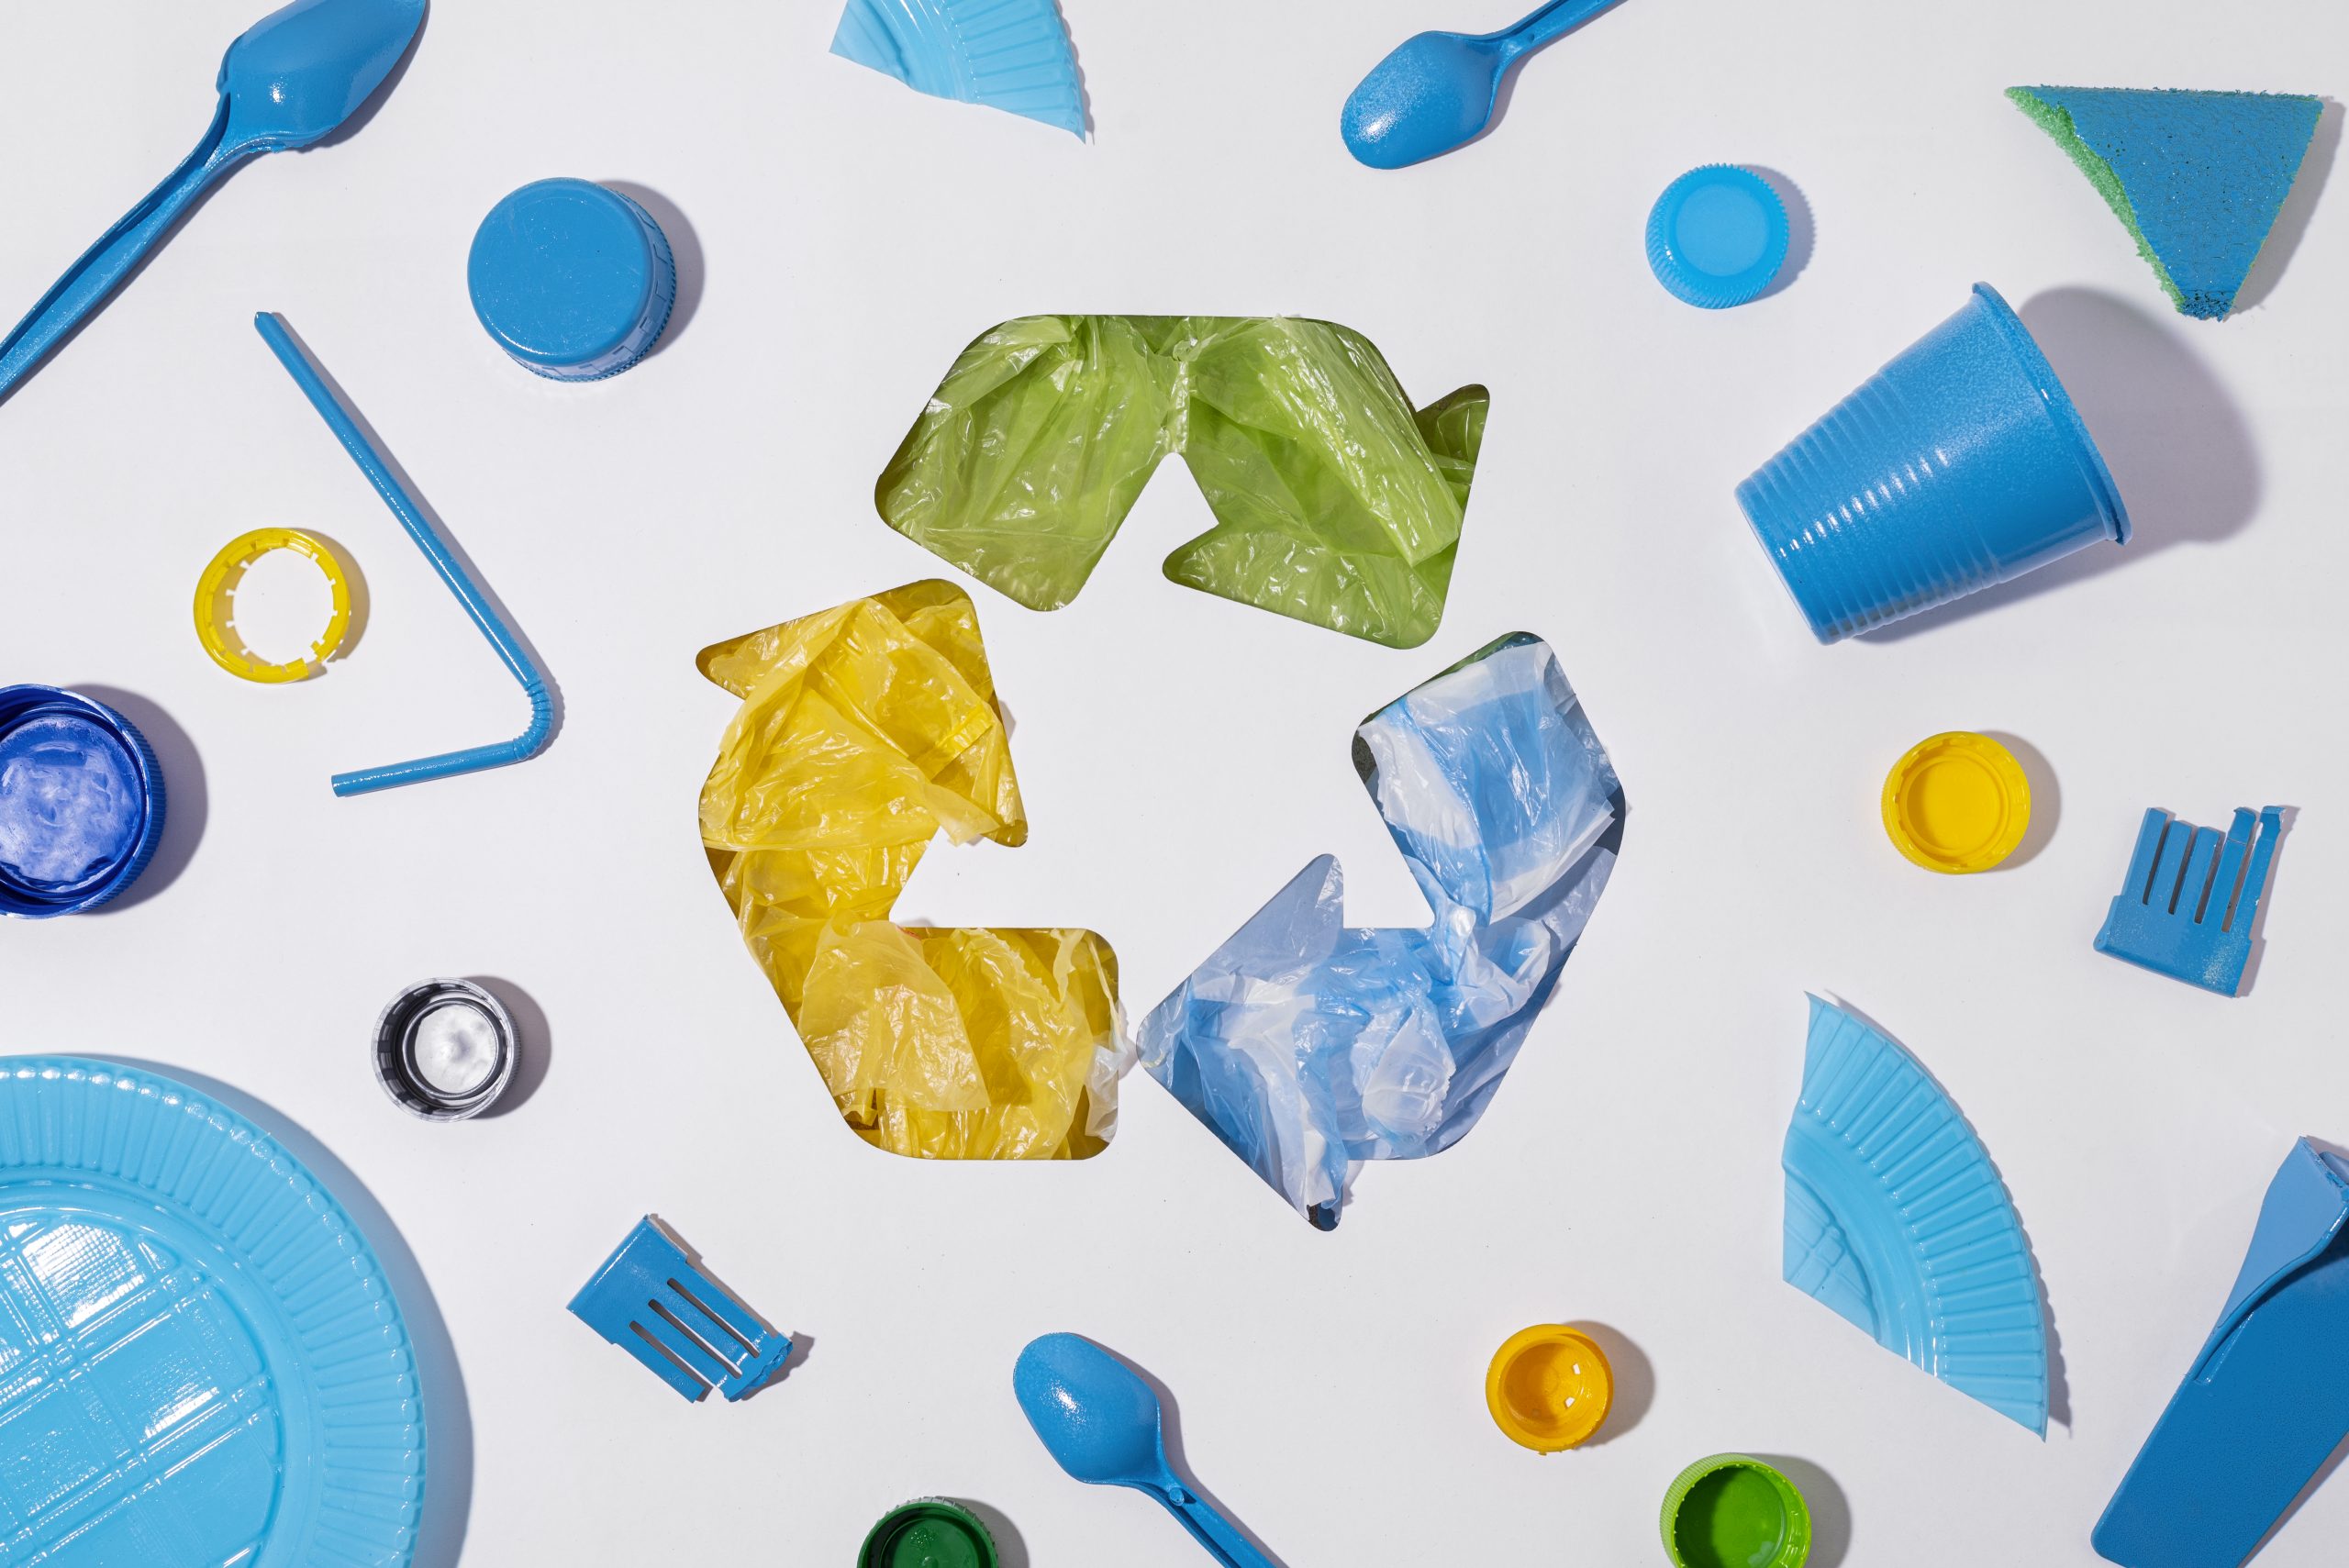 Economia circular para os plásticos